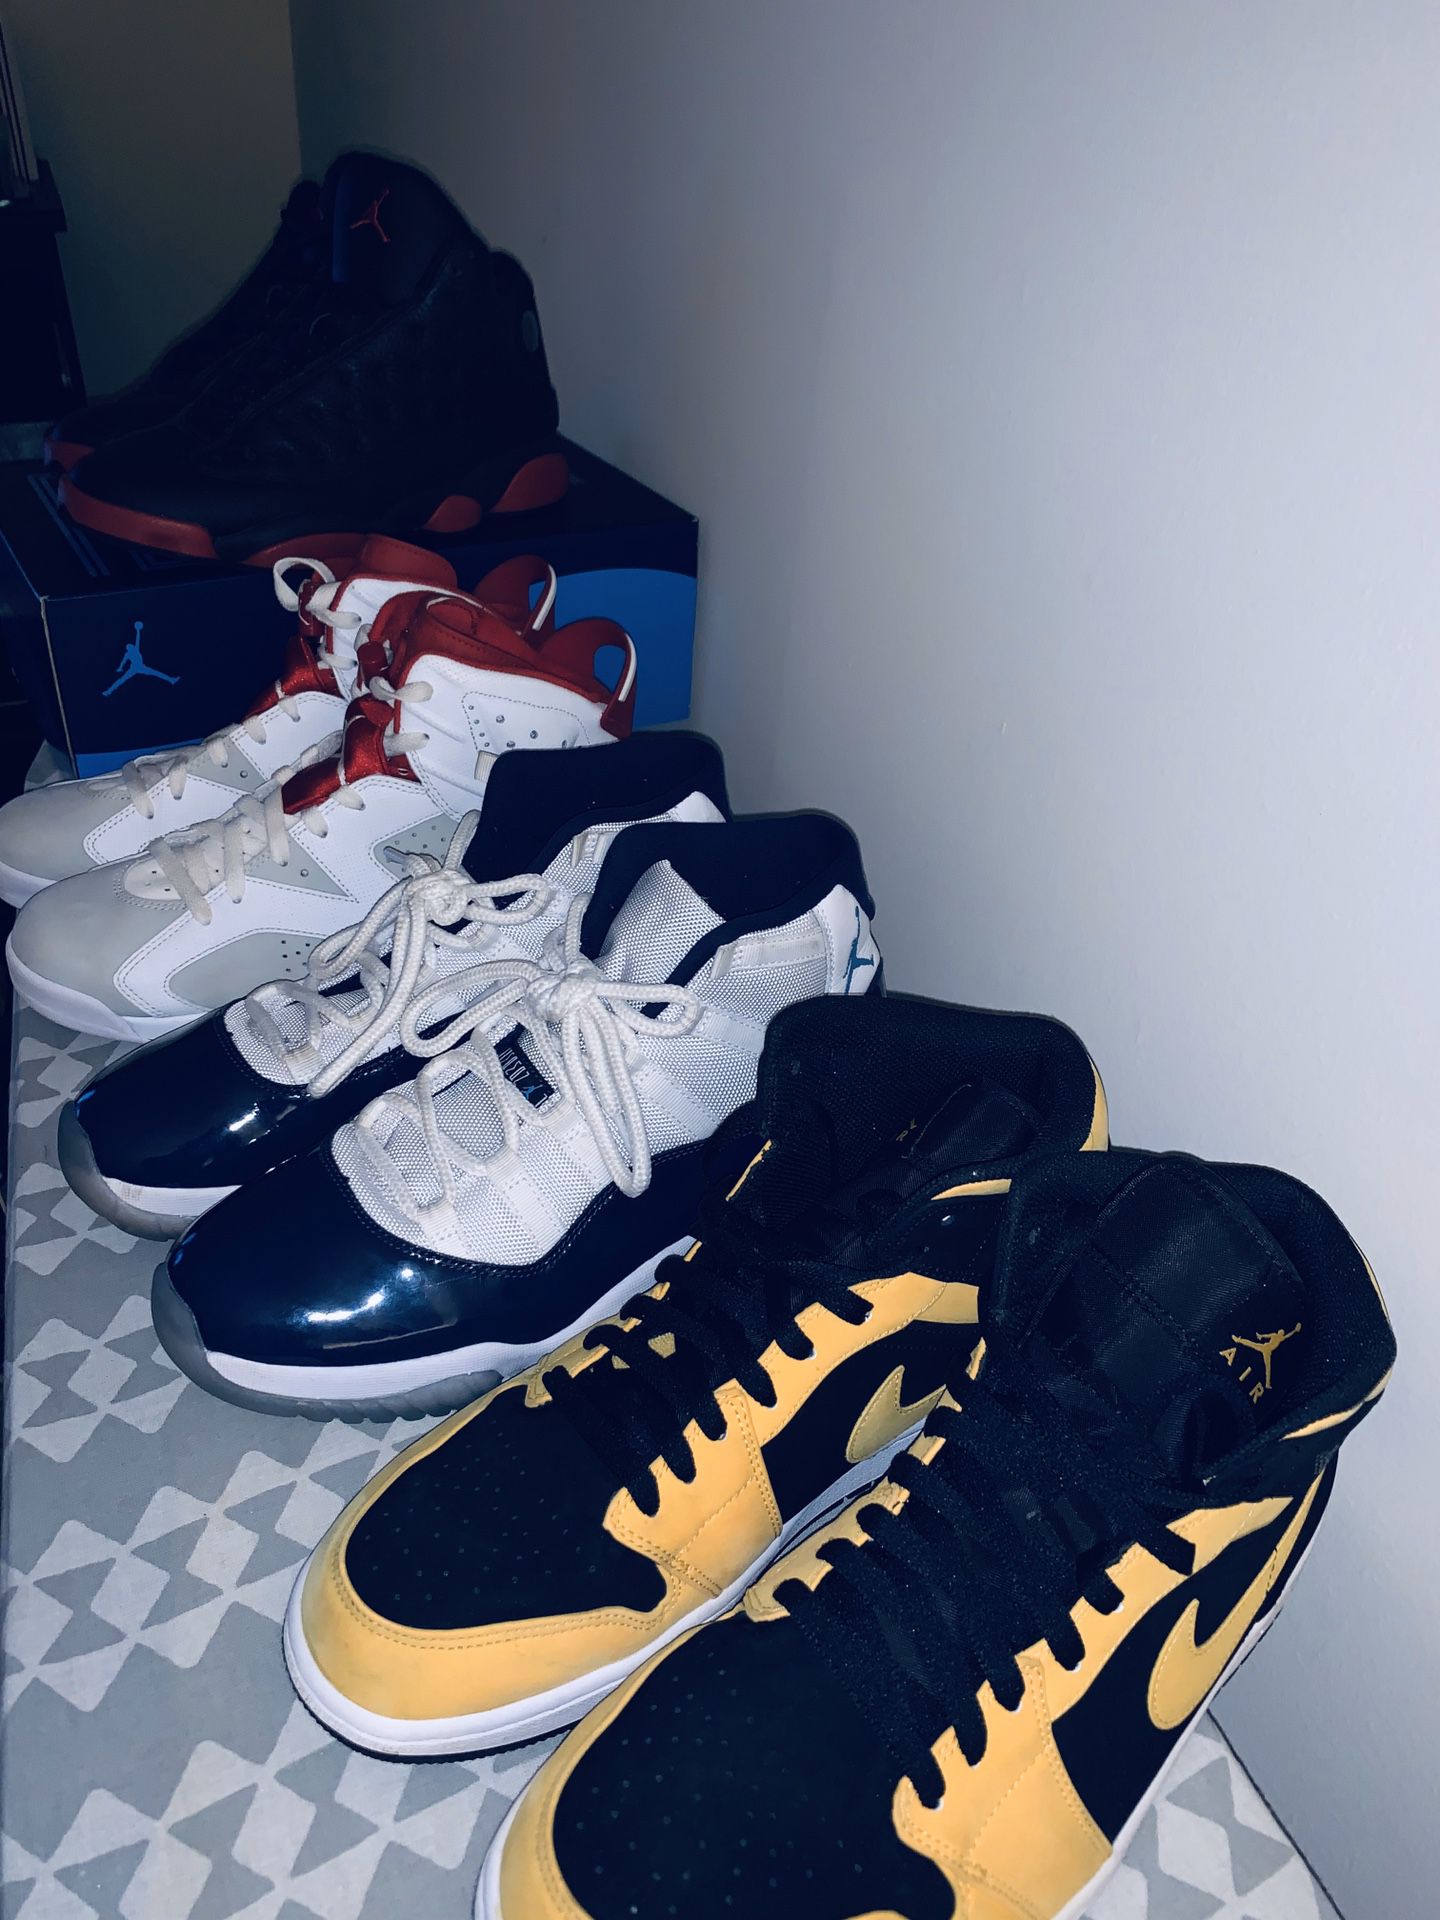 Jordans For sale